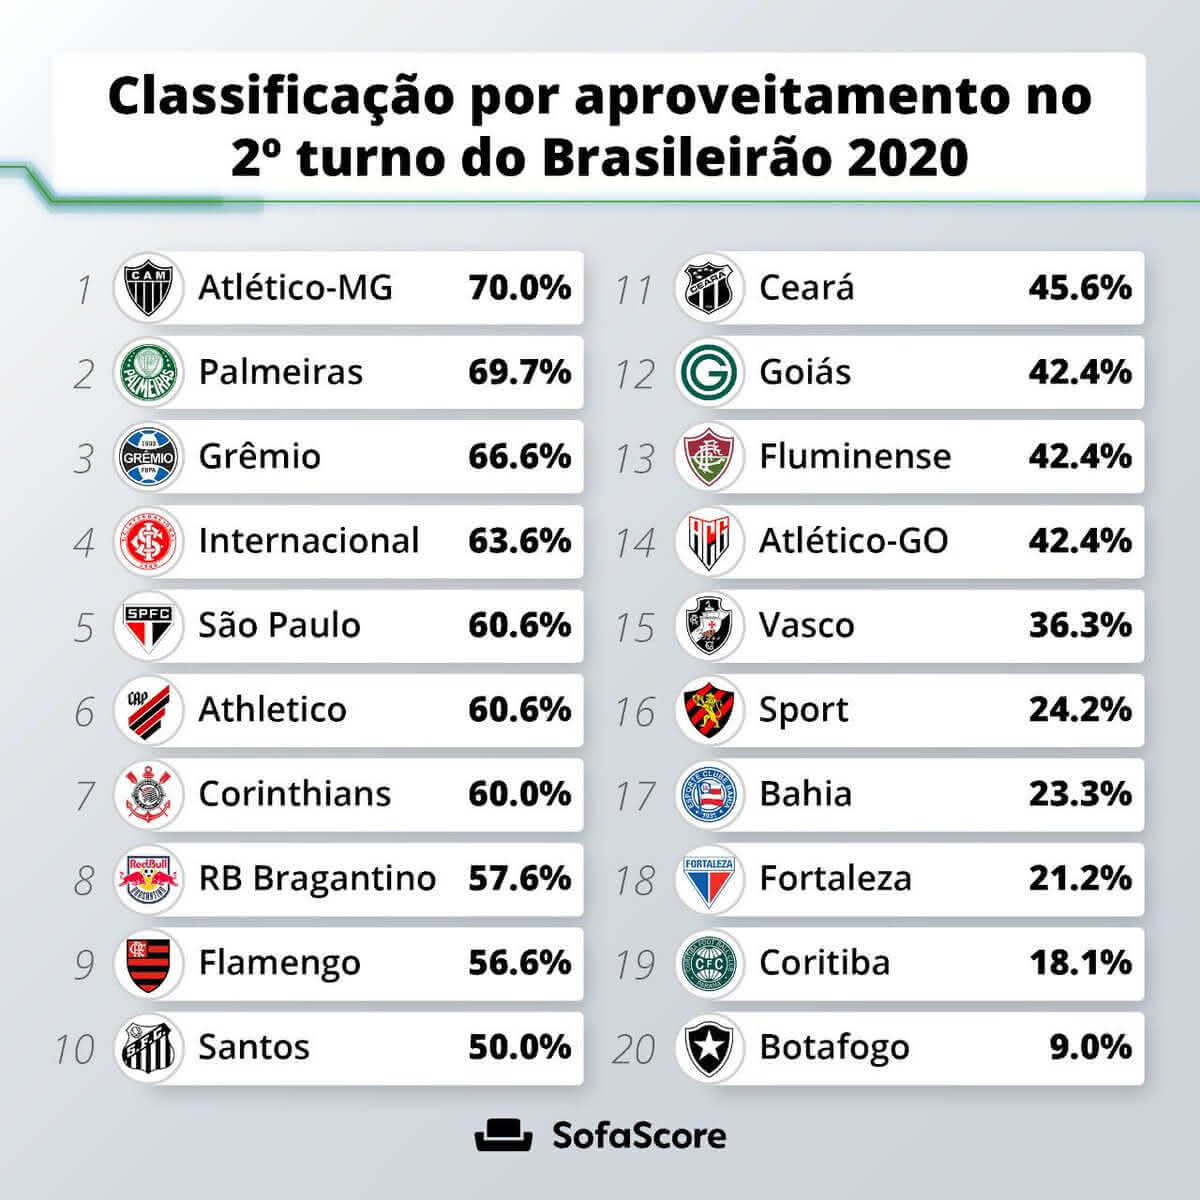 Ranking de aproveitamento por pontos no 2º turno do Brasileirão